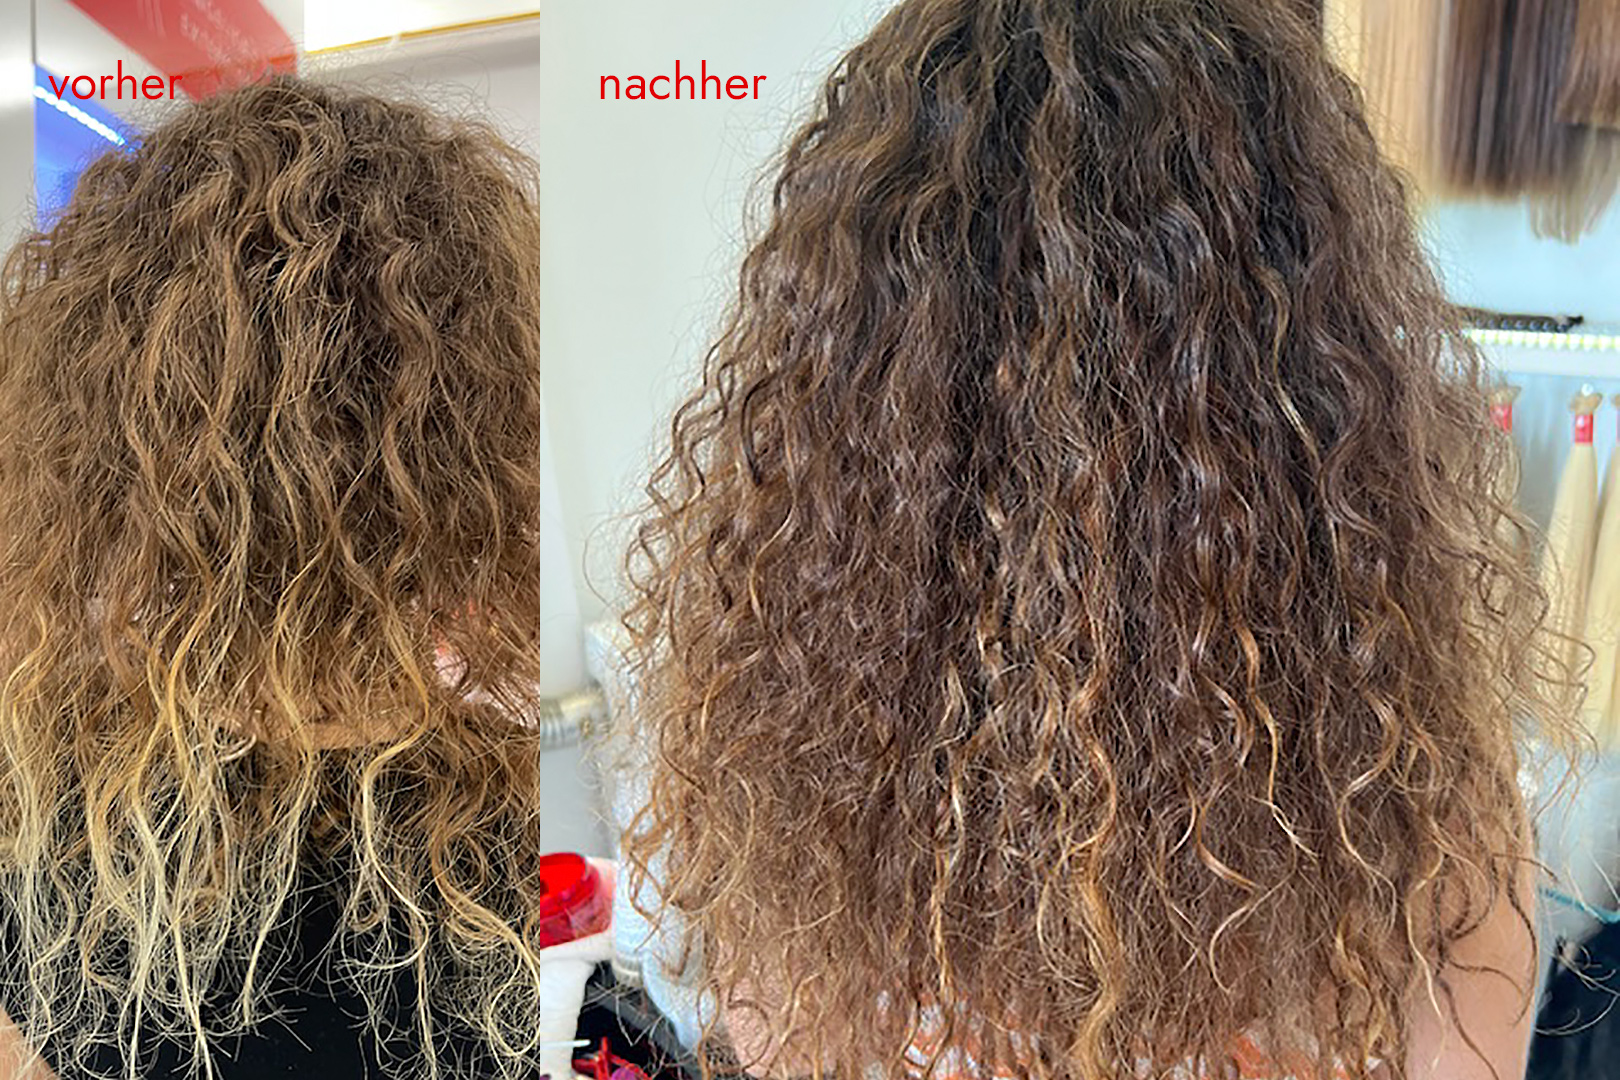 Angelicas Hair Extensions: Kundin vorher und nachher mit Haarverdichtung - curly look